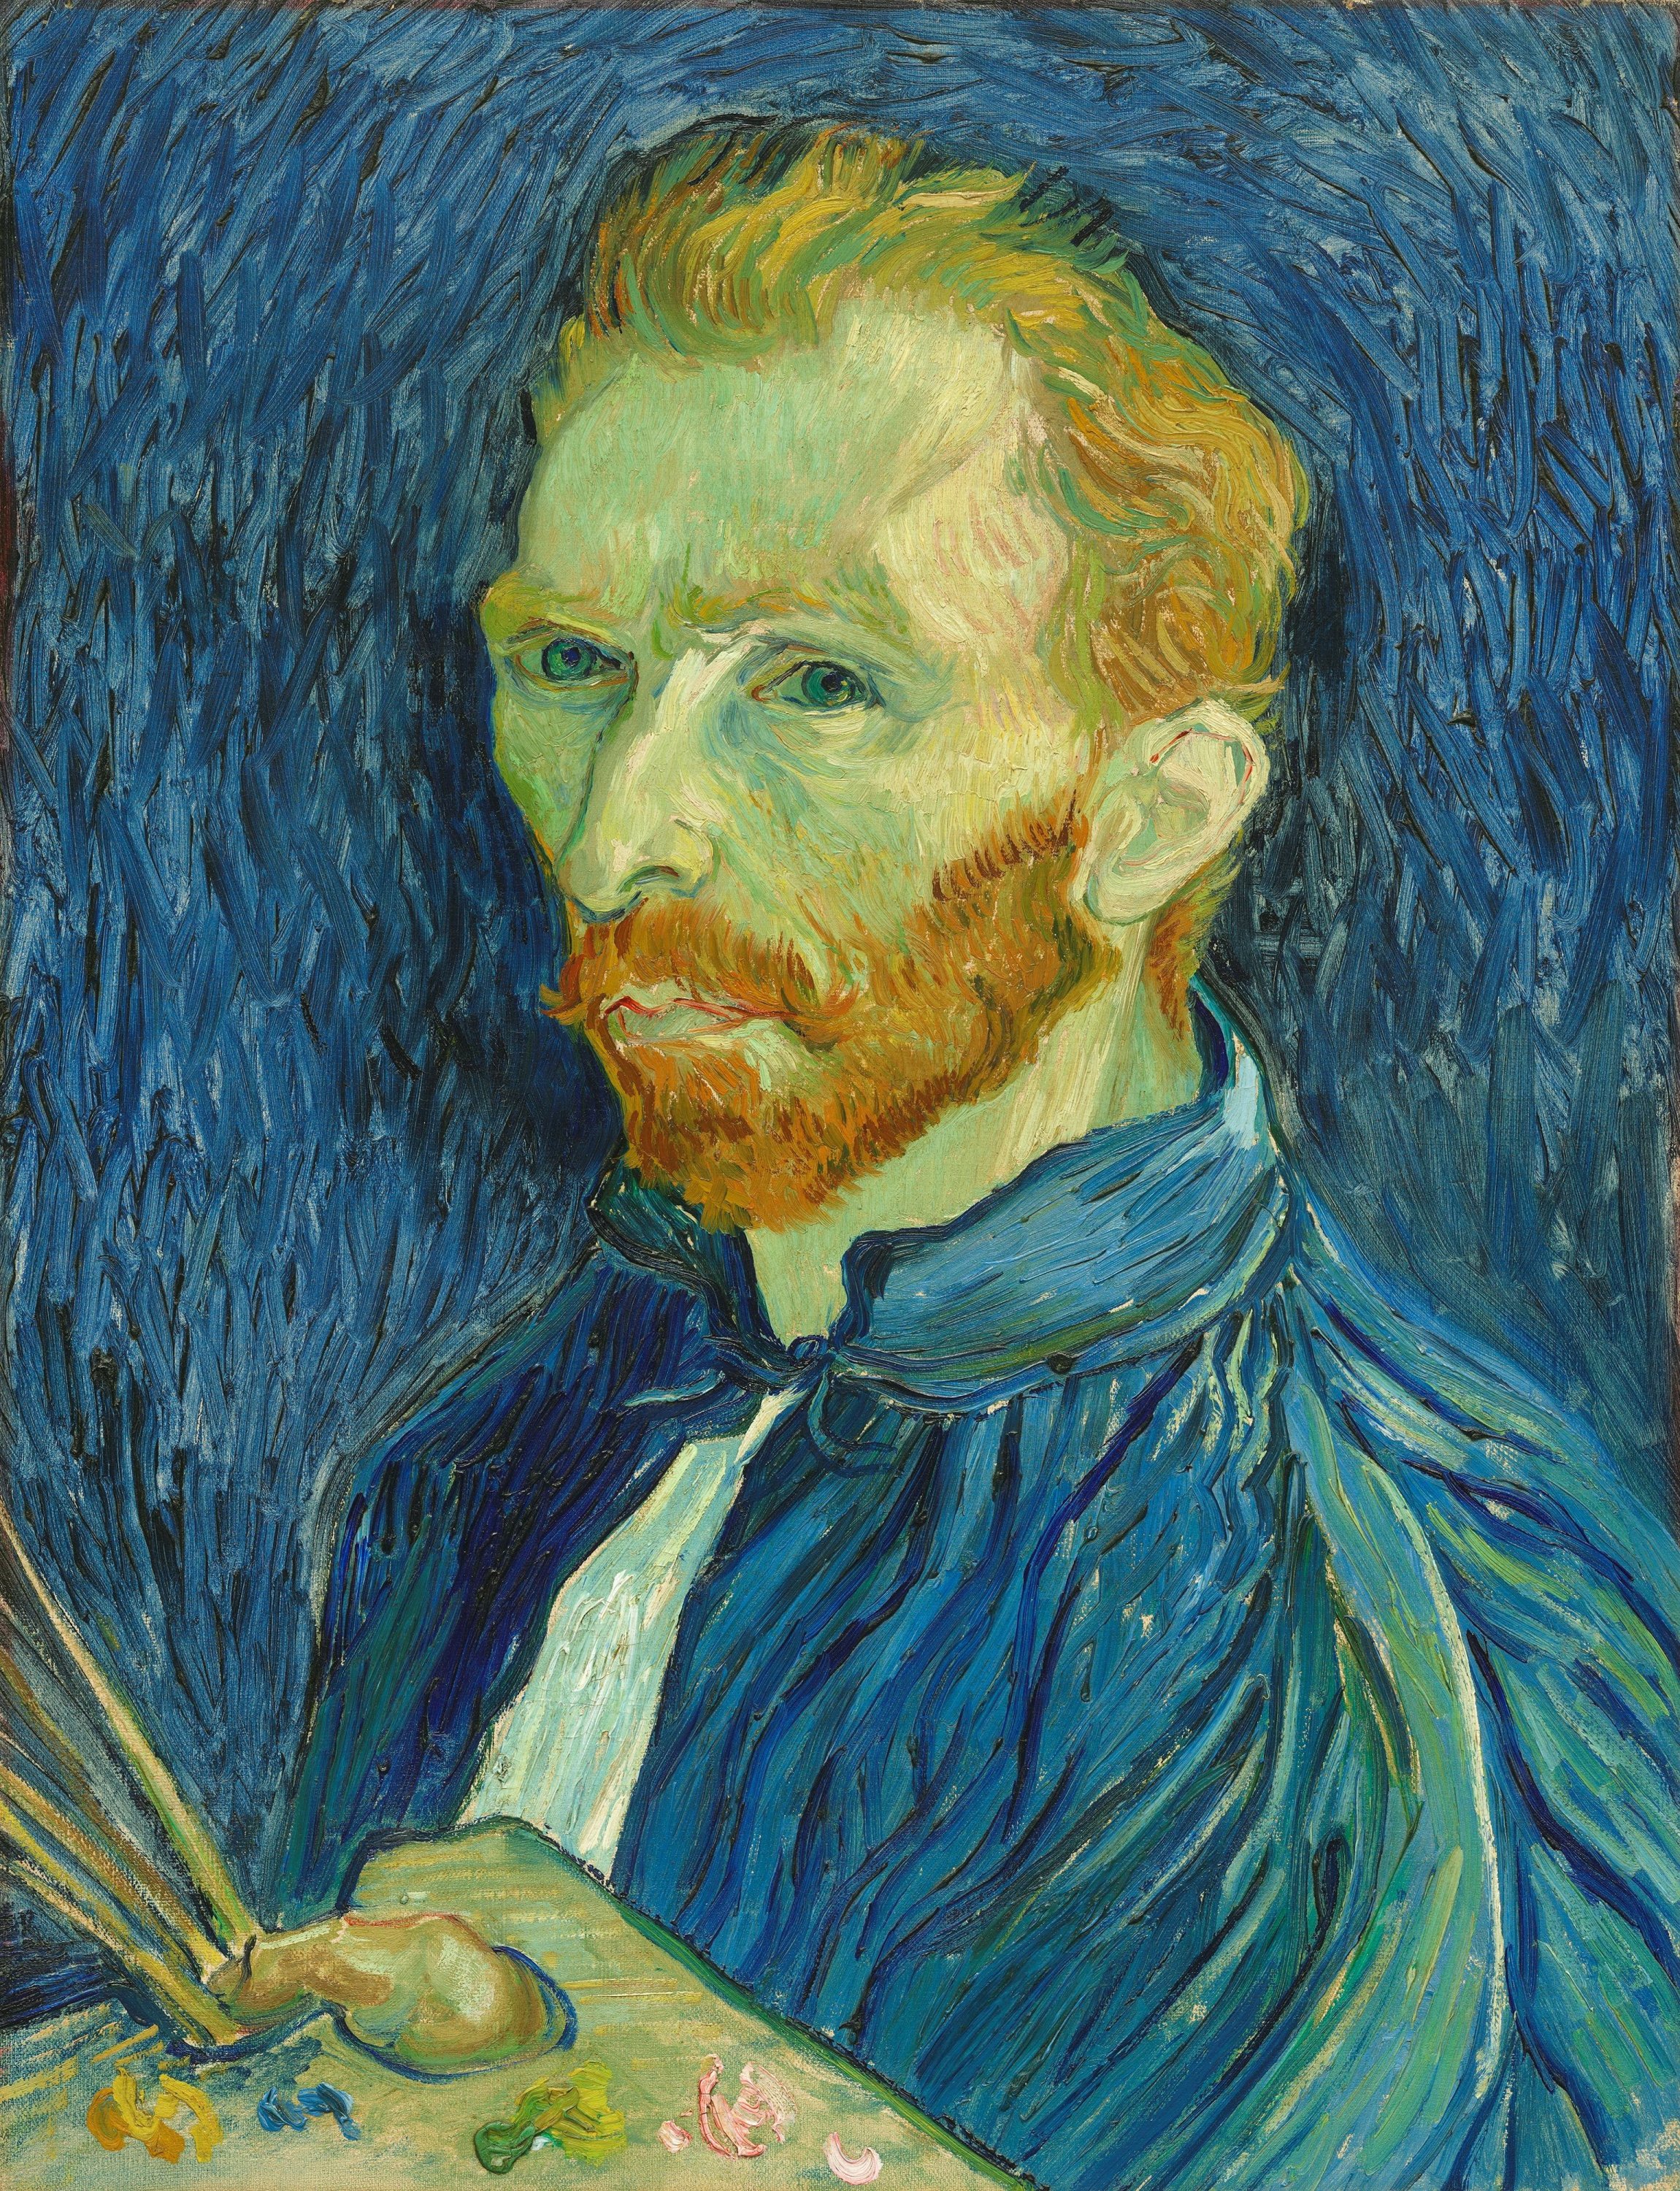 Vincent van Gogh, "Self-portrait," 1889, obtained on June 30, 2021. (Reuters Photo) 